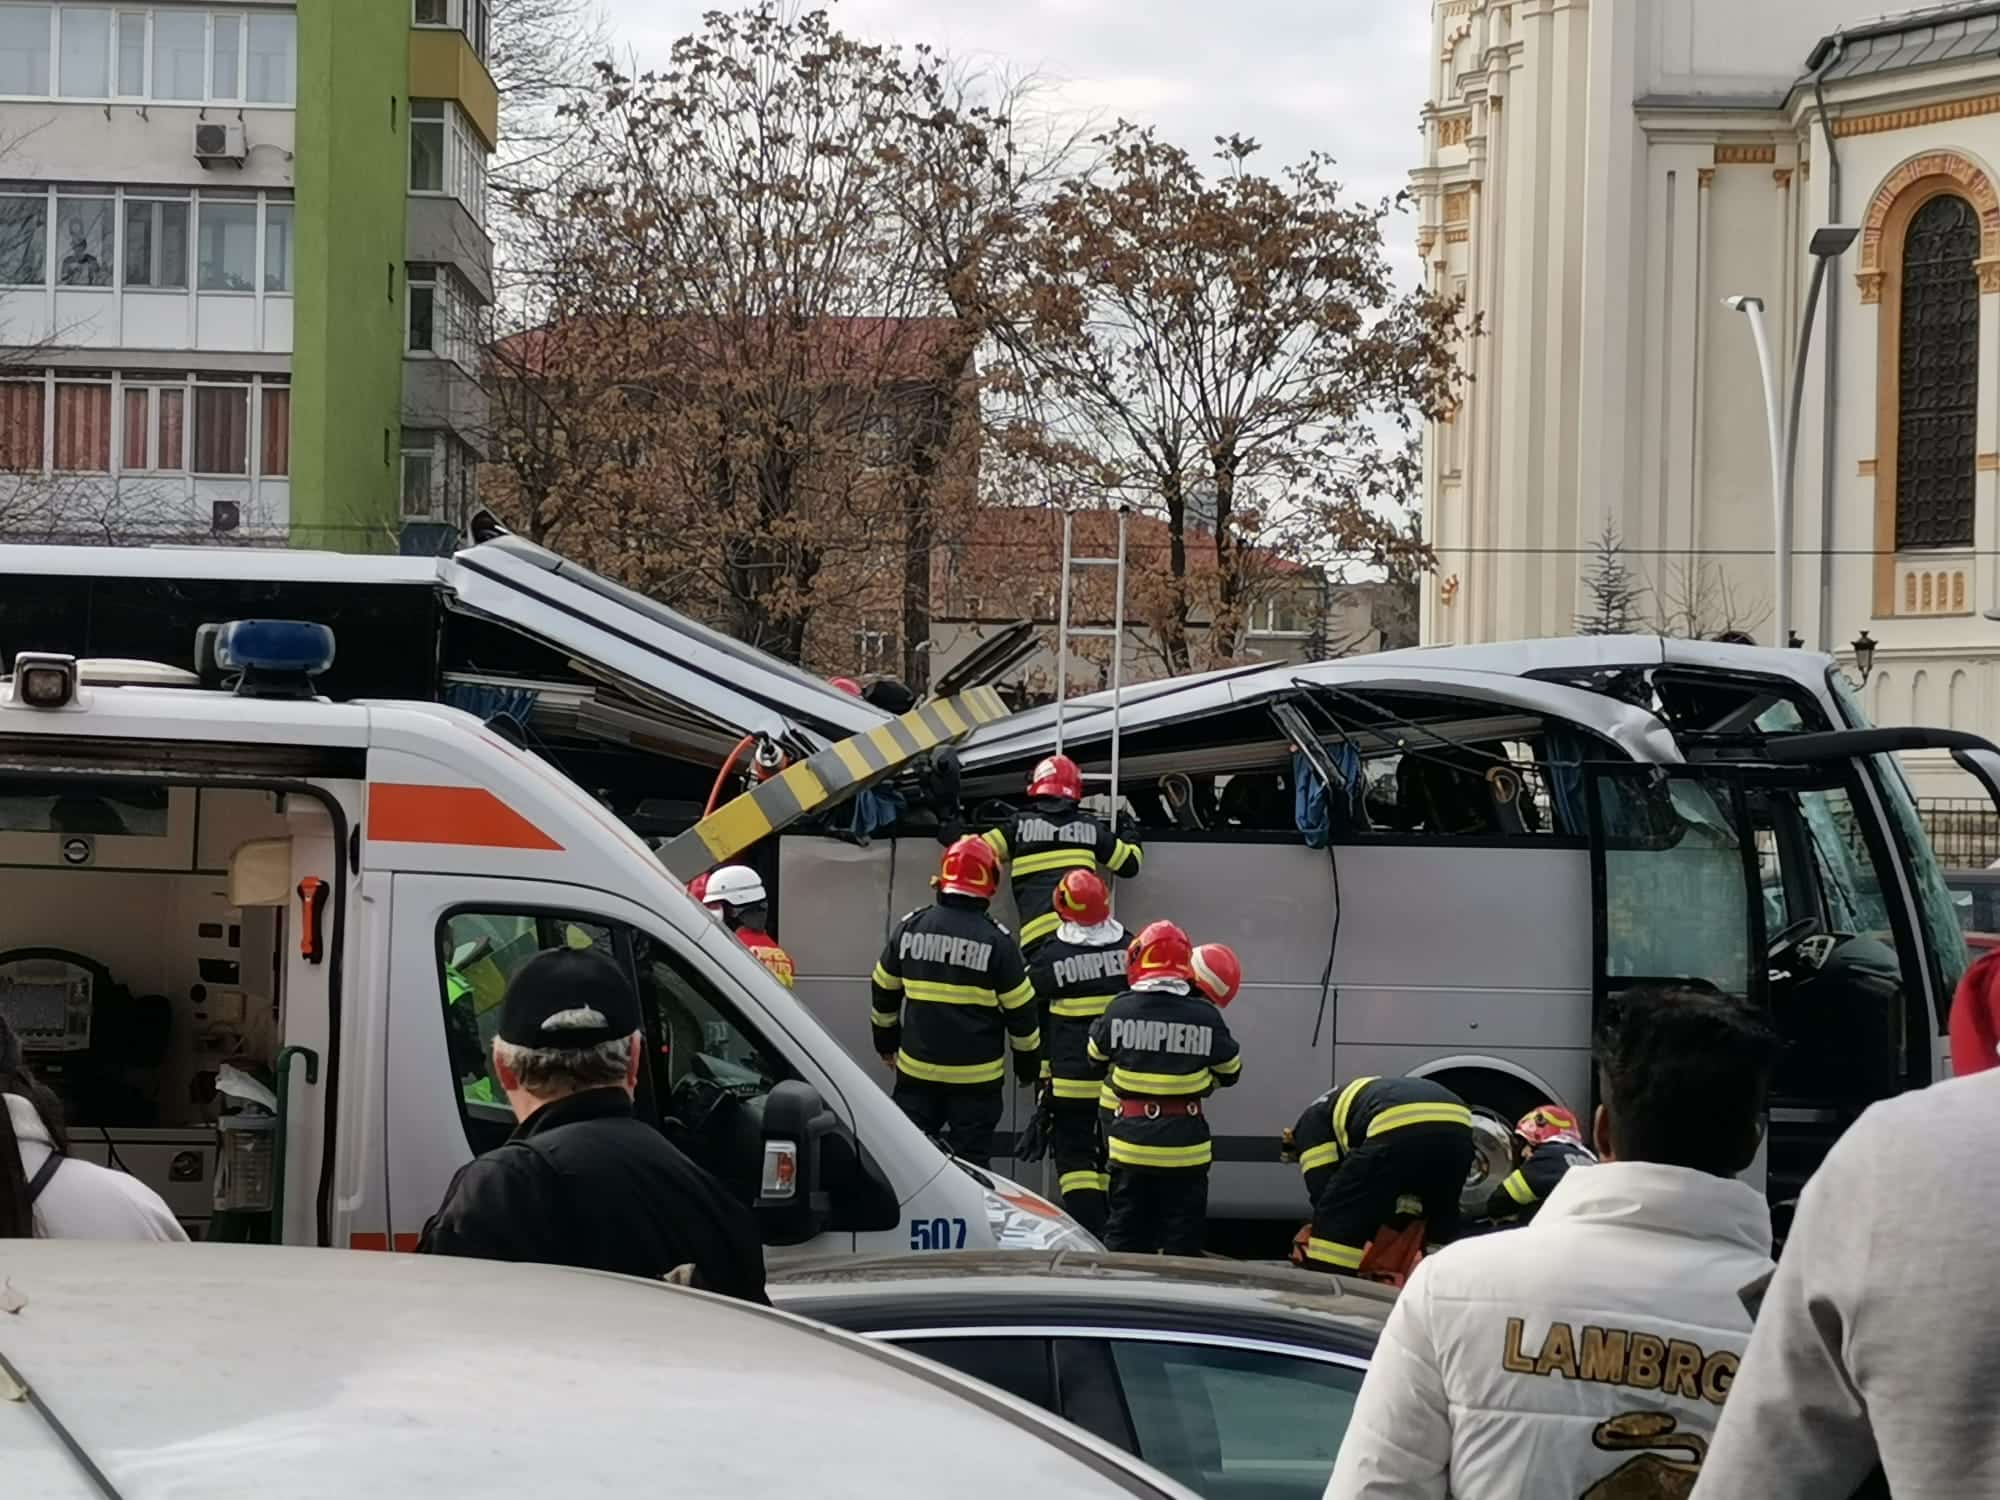 Τροχαίο-σοκ στη Ρουμανία με λεωφορείο που μετέφερε 47 Έλληνες - Ένας νεκρός, 23 τραυματίες (εικόνες & βίντεο)